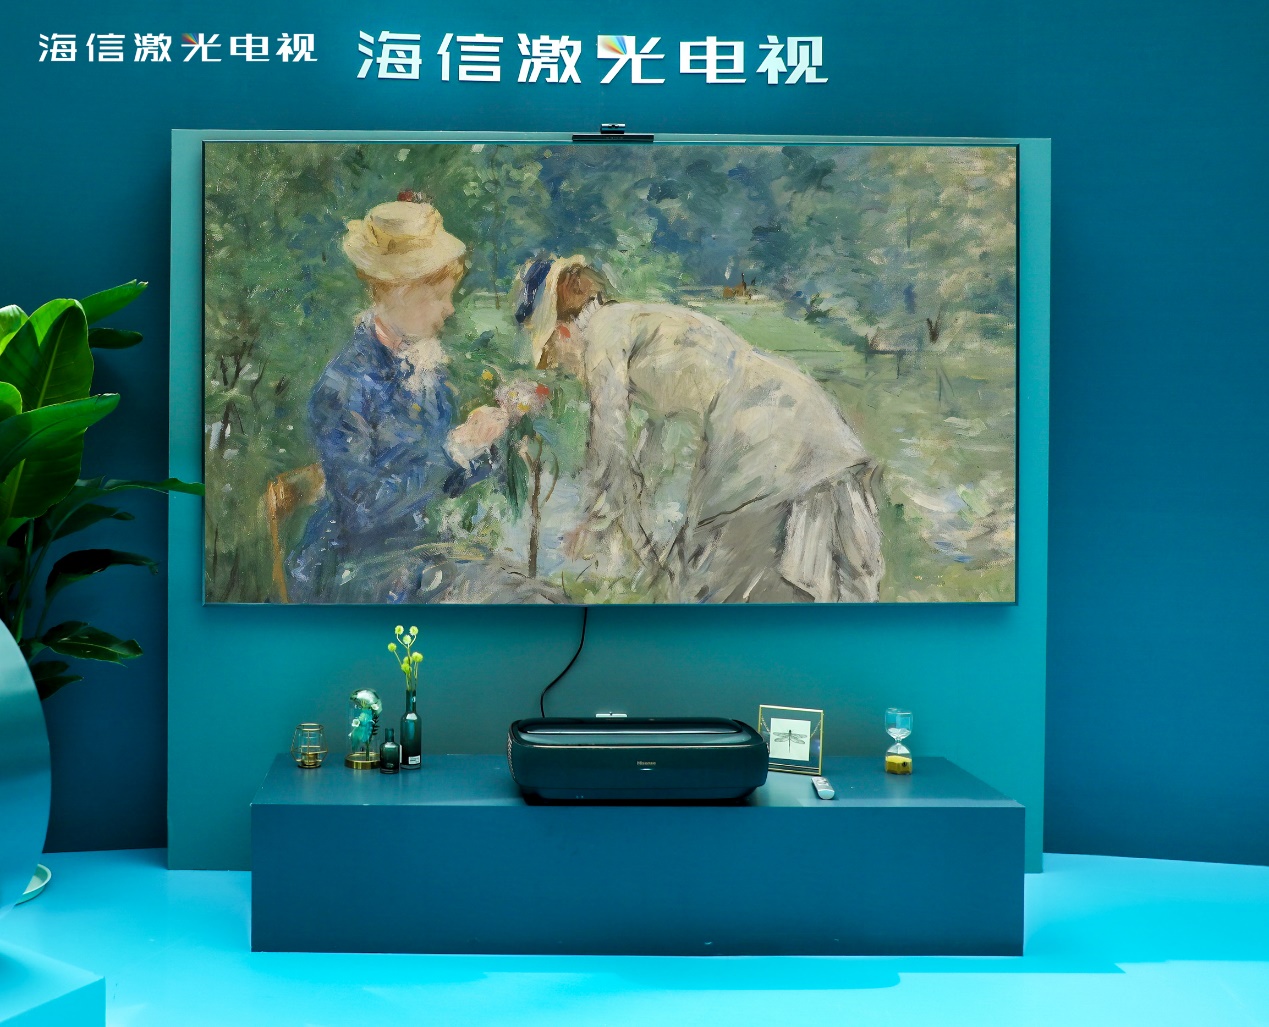 专利申请全球第一，中国激光电视创新提速，年内将上市卷曲屏新品